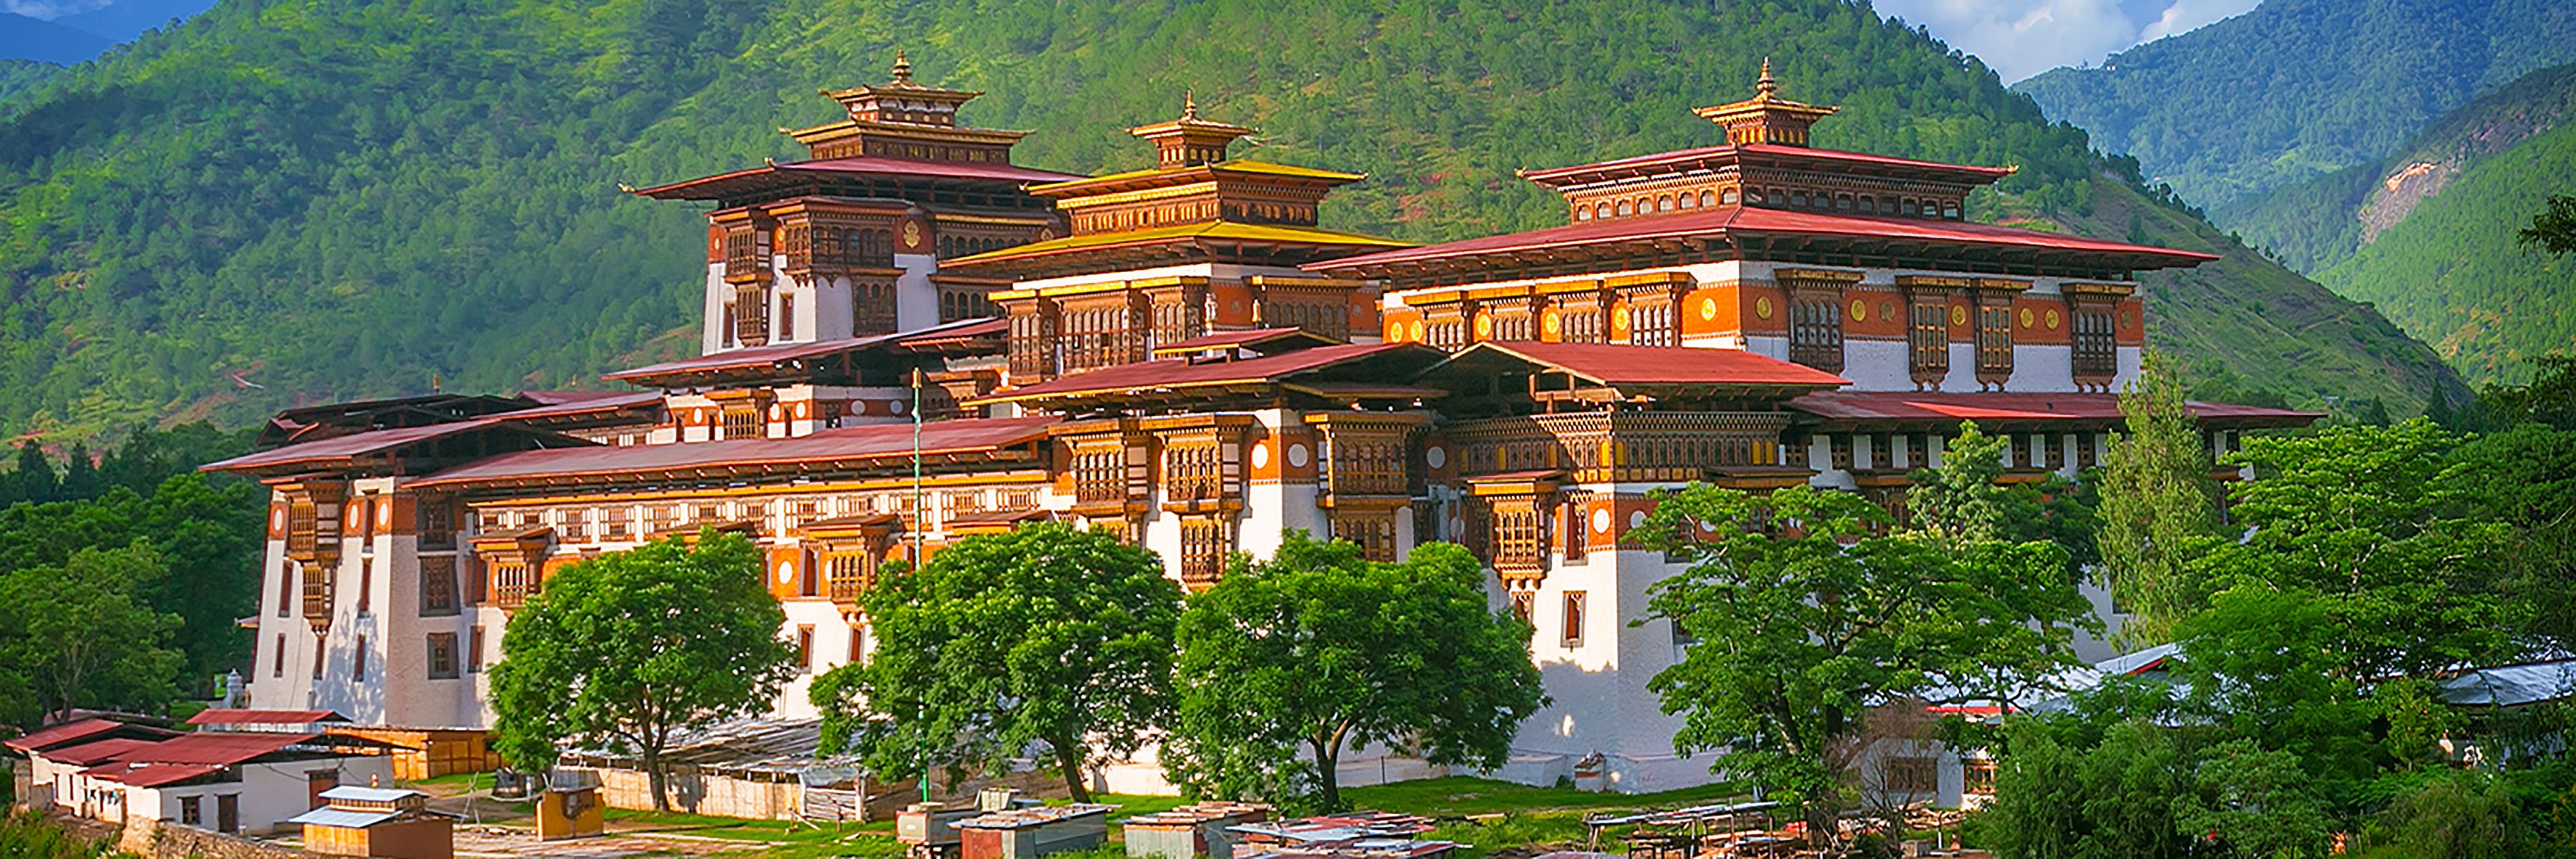 Reise Bhutan Punakha Dzong-Kloster